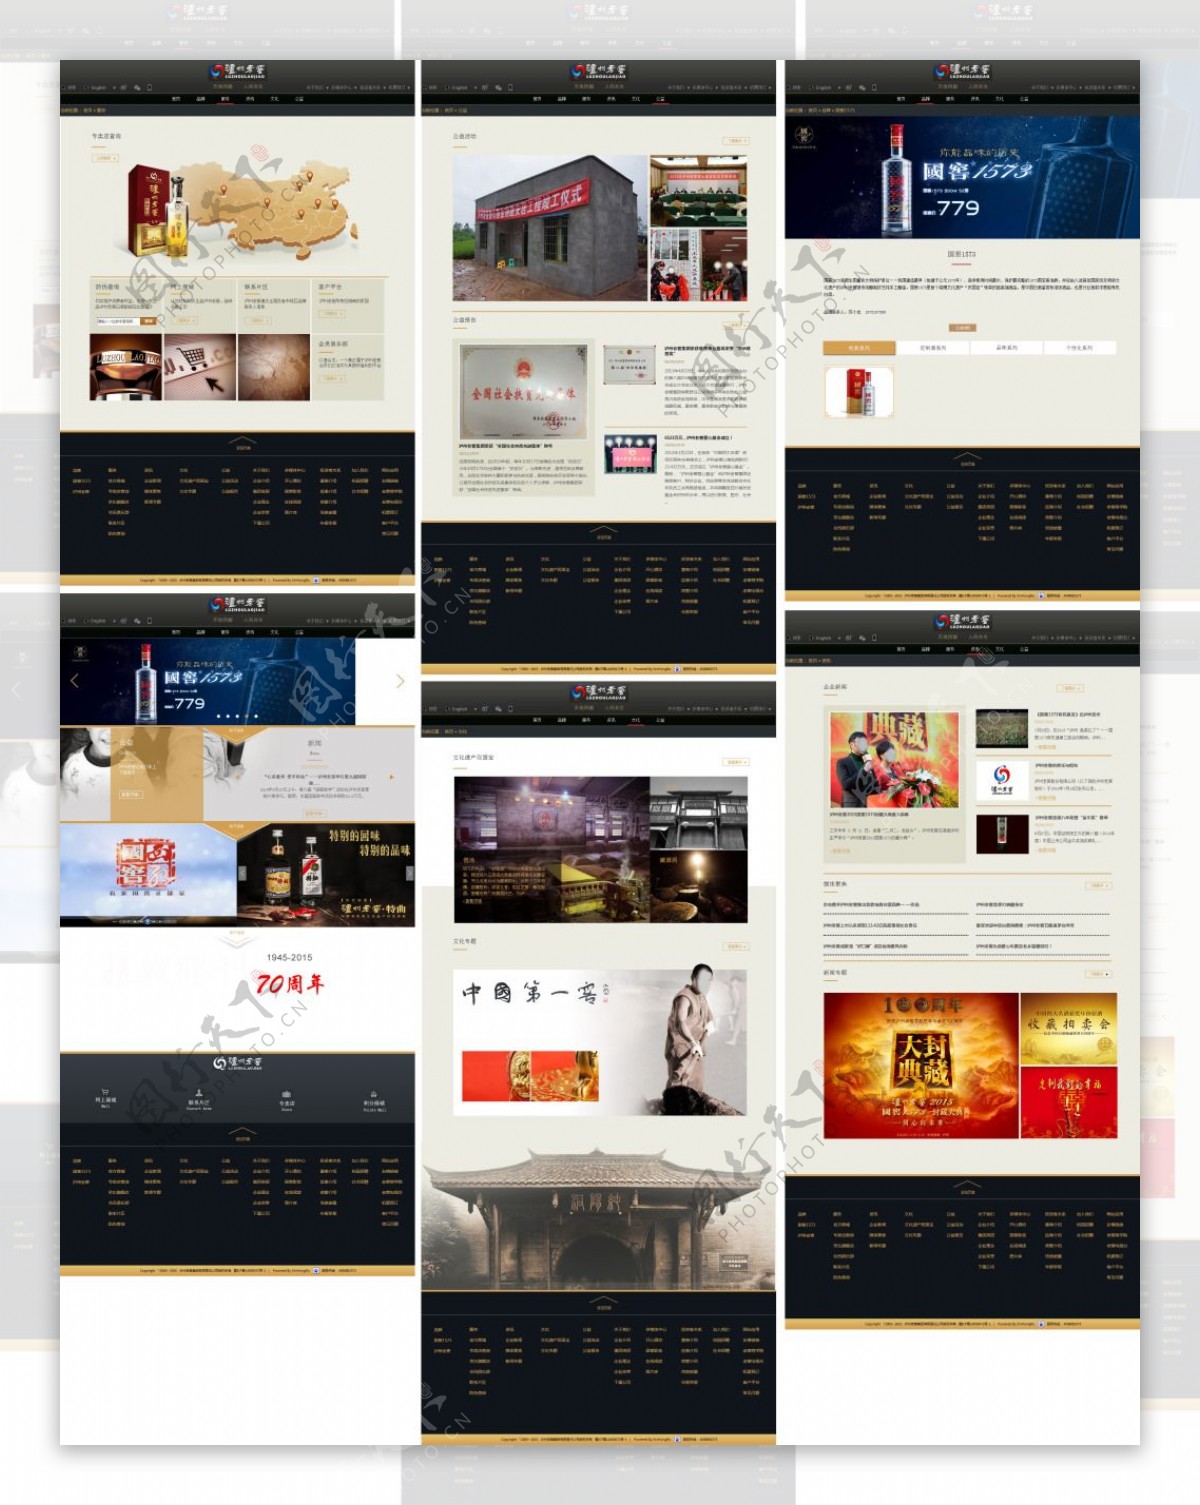 泸州老窖集团系列网页设计